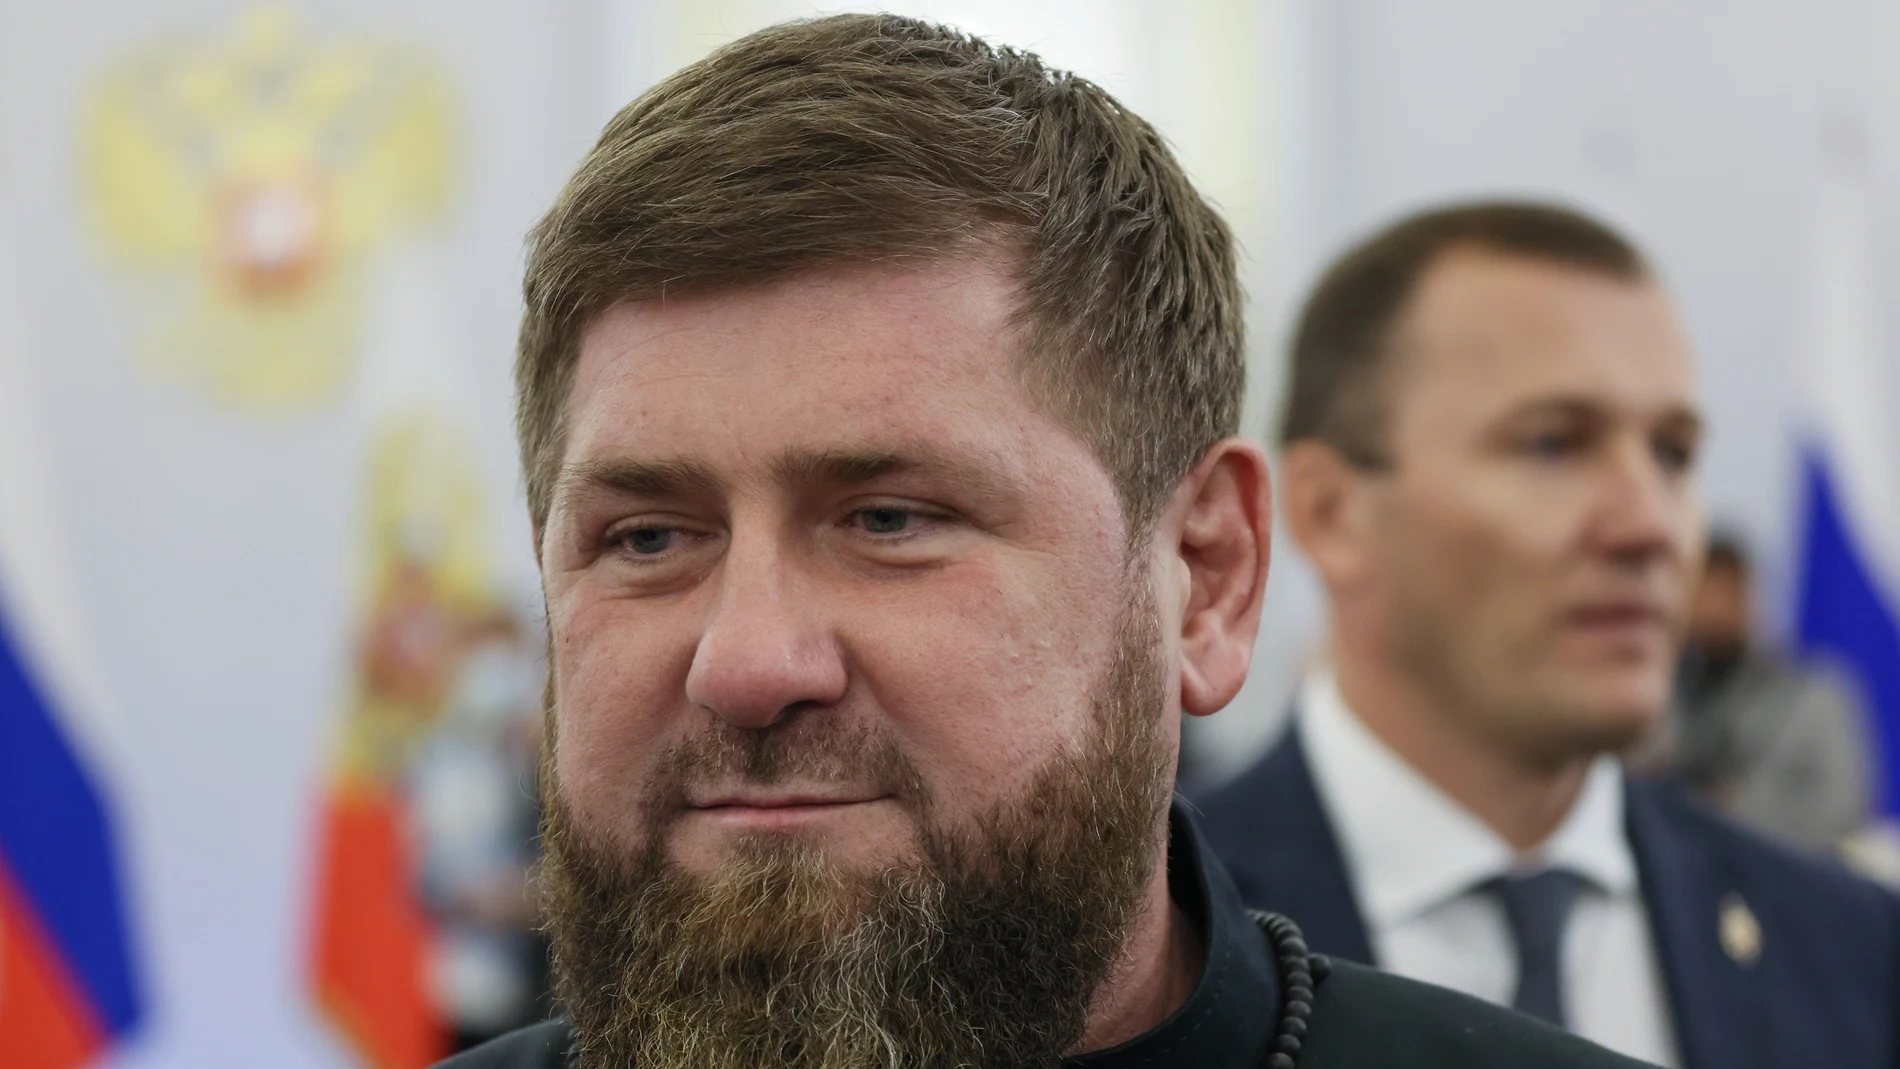 El líder checheno, Ramzan Kadirov, asiste a la ceremonia para firmar los tratados de anexión de cuatro regiones de Ucrania en Moscú